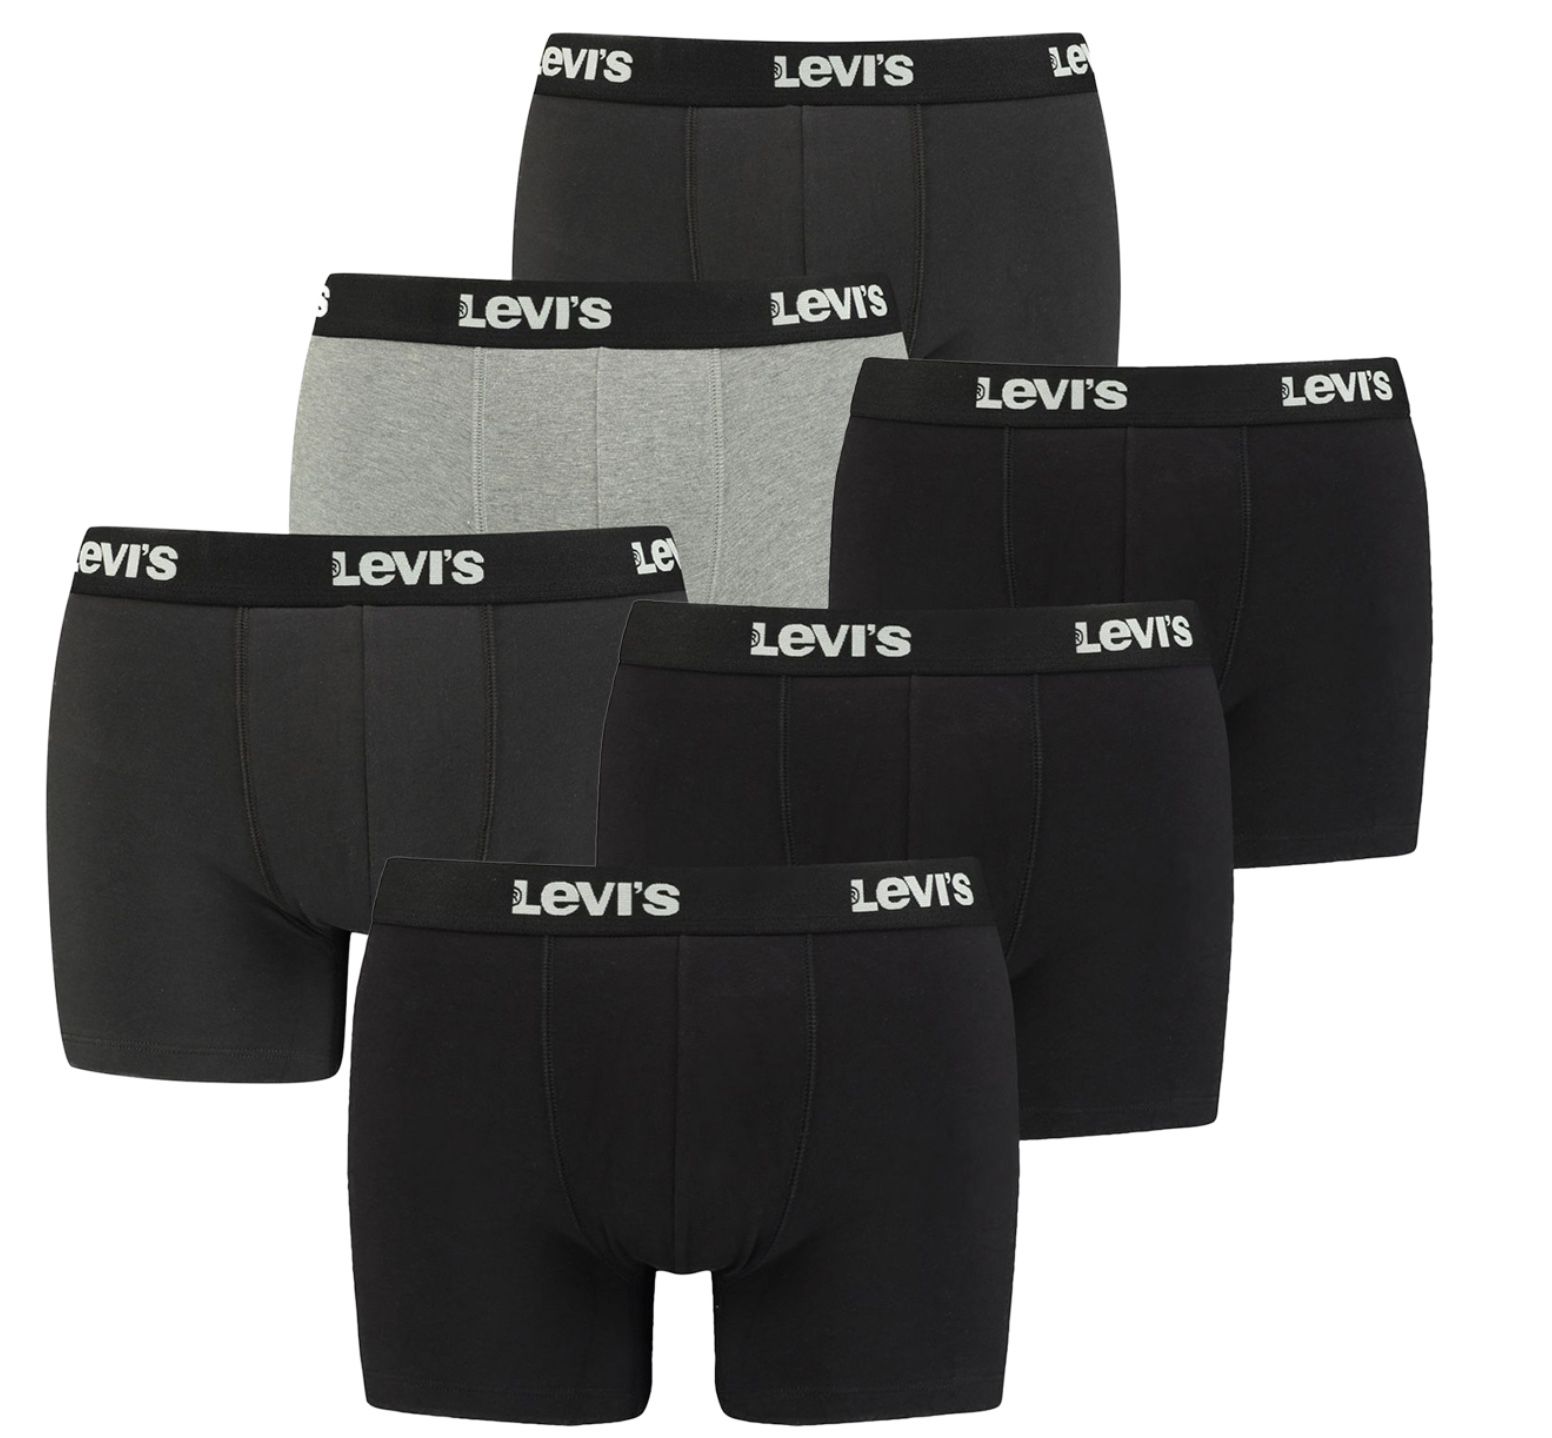 6er Pack Levis Boxershorts in vielen Farben oder gemischt für 33€ (statt 47€) oder 8er Pack für 42€